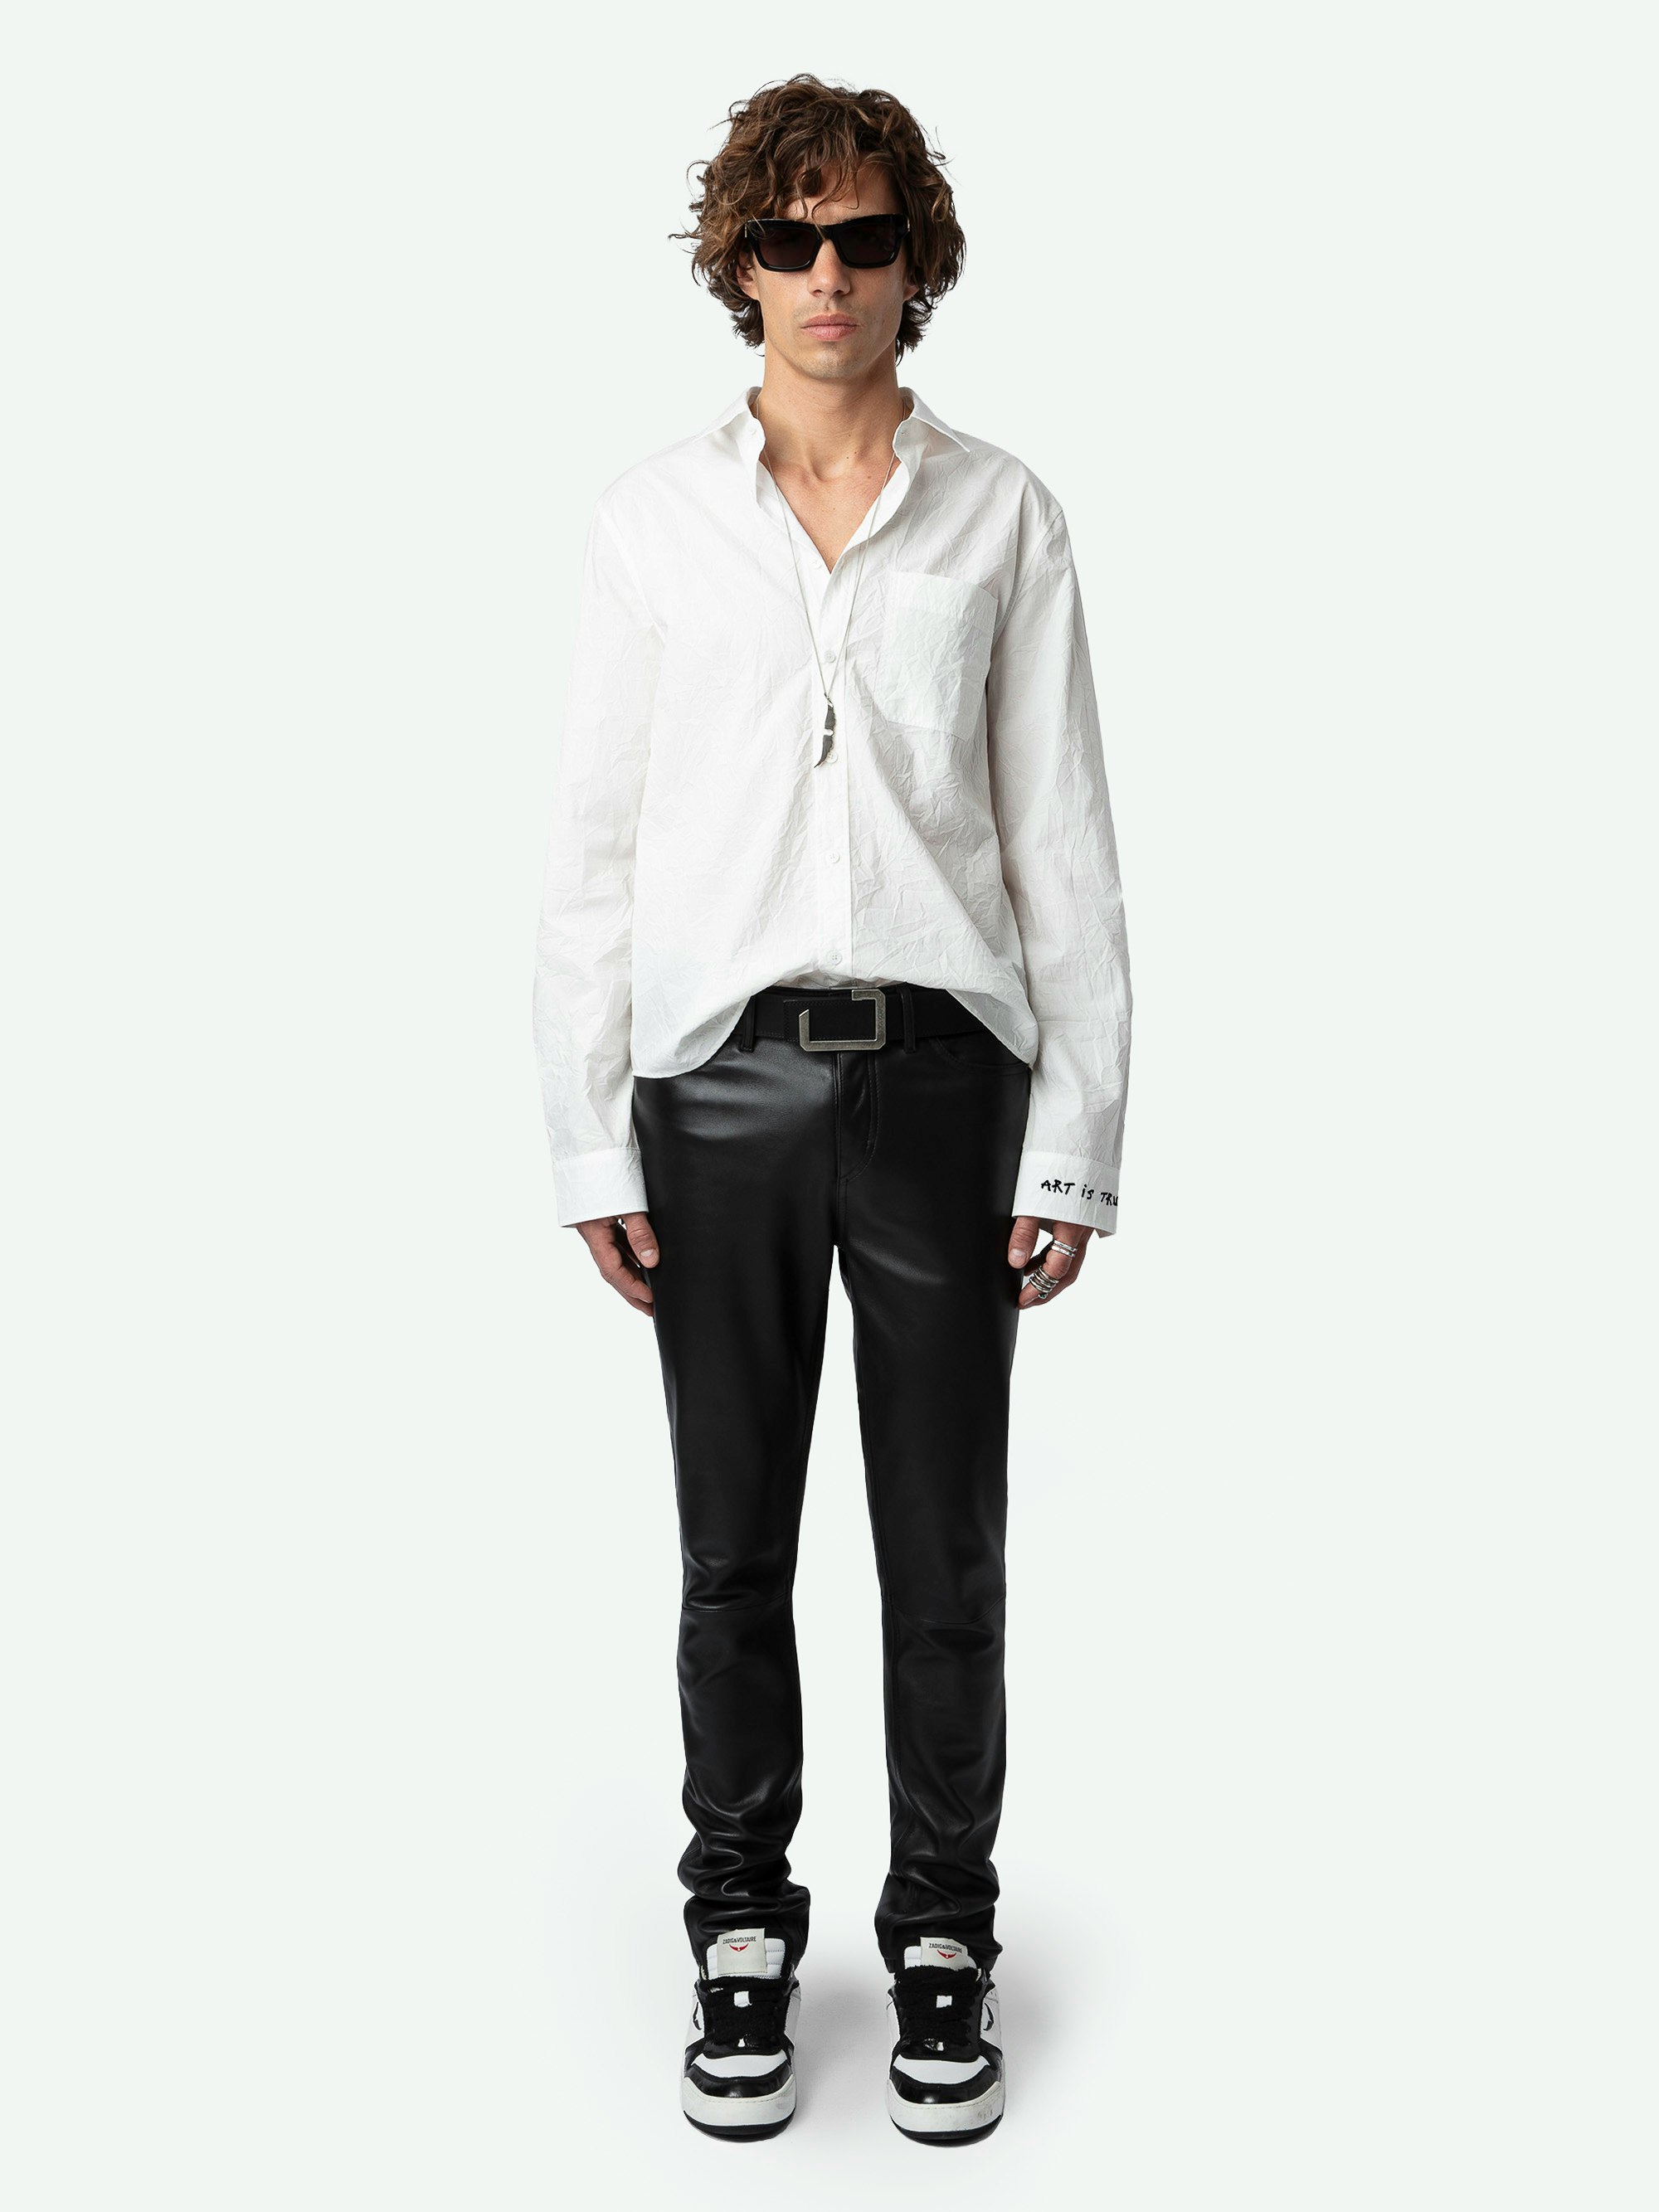 Camisa Stan - Camisa de algodón ecológico de color blanco con efecto arrugado, de manga larga, con bordado Artist Rules.